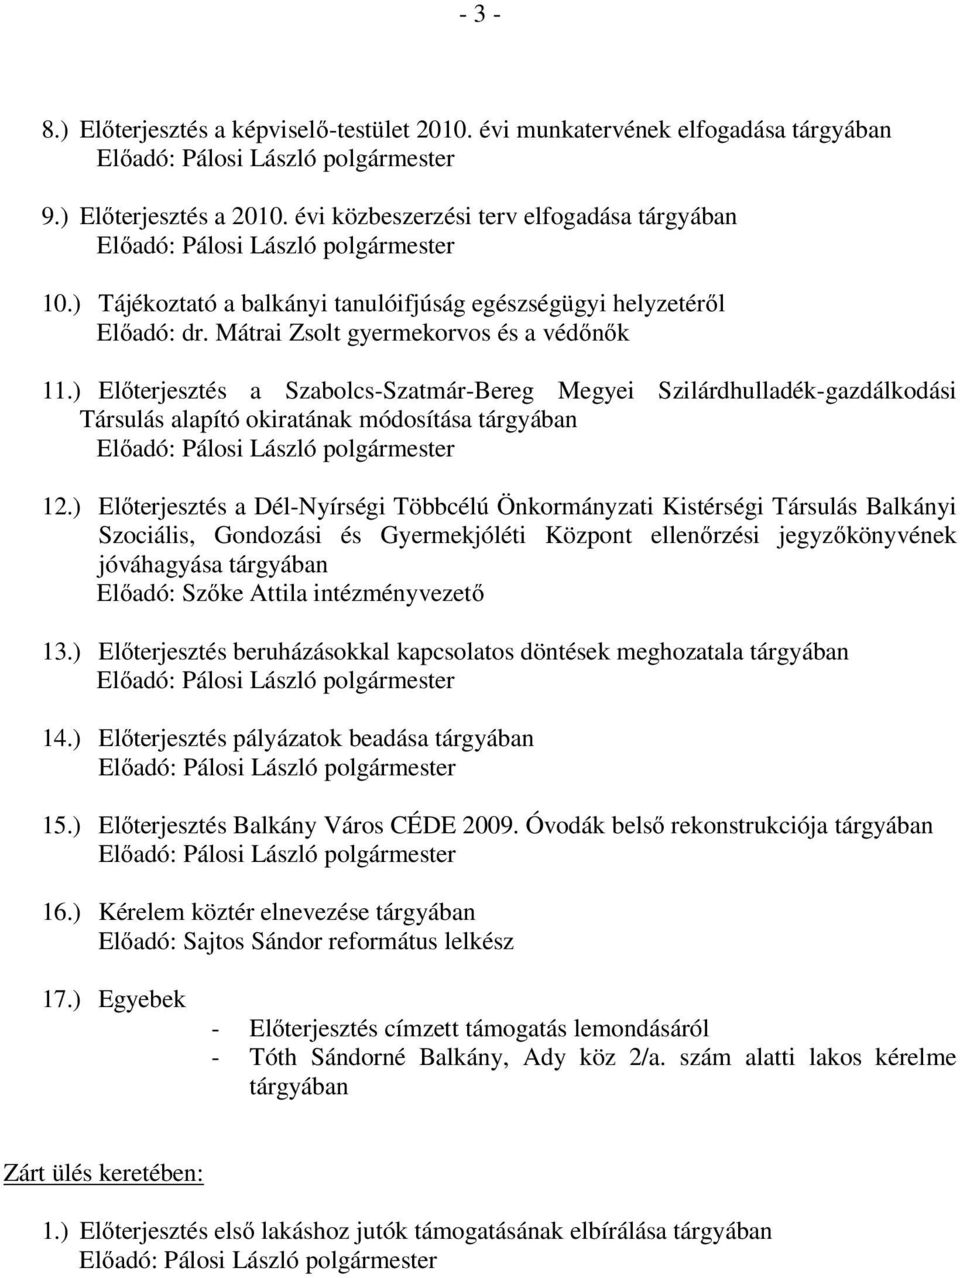 ) Előterjesztés a Szabolcs-Szatmár-Bereg Megyei Szilárdhulladék-gazdálkodási Társulás alapító okiratának módosítása tárgyában 12.